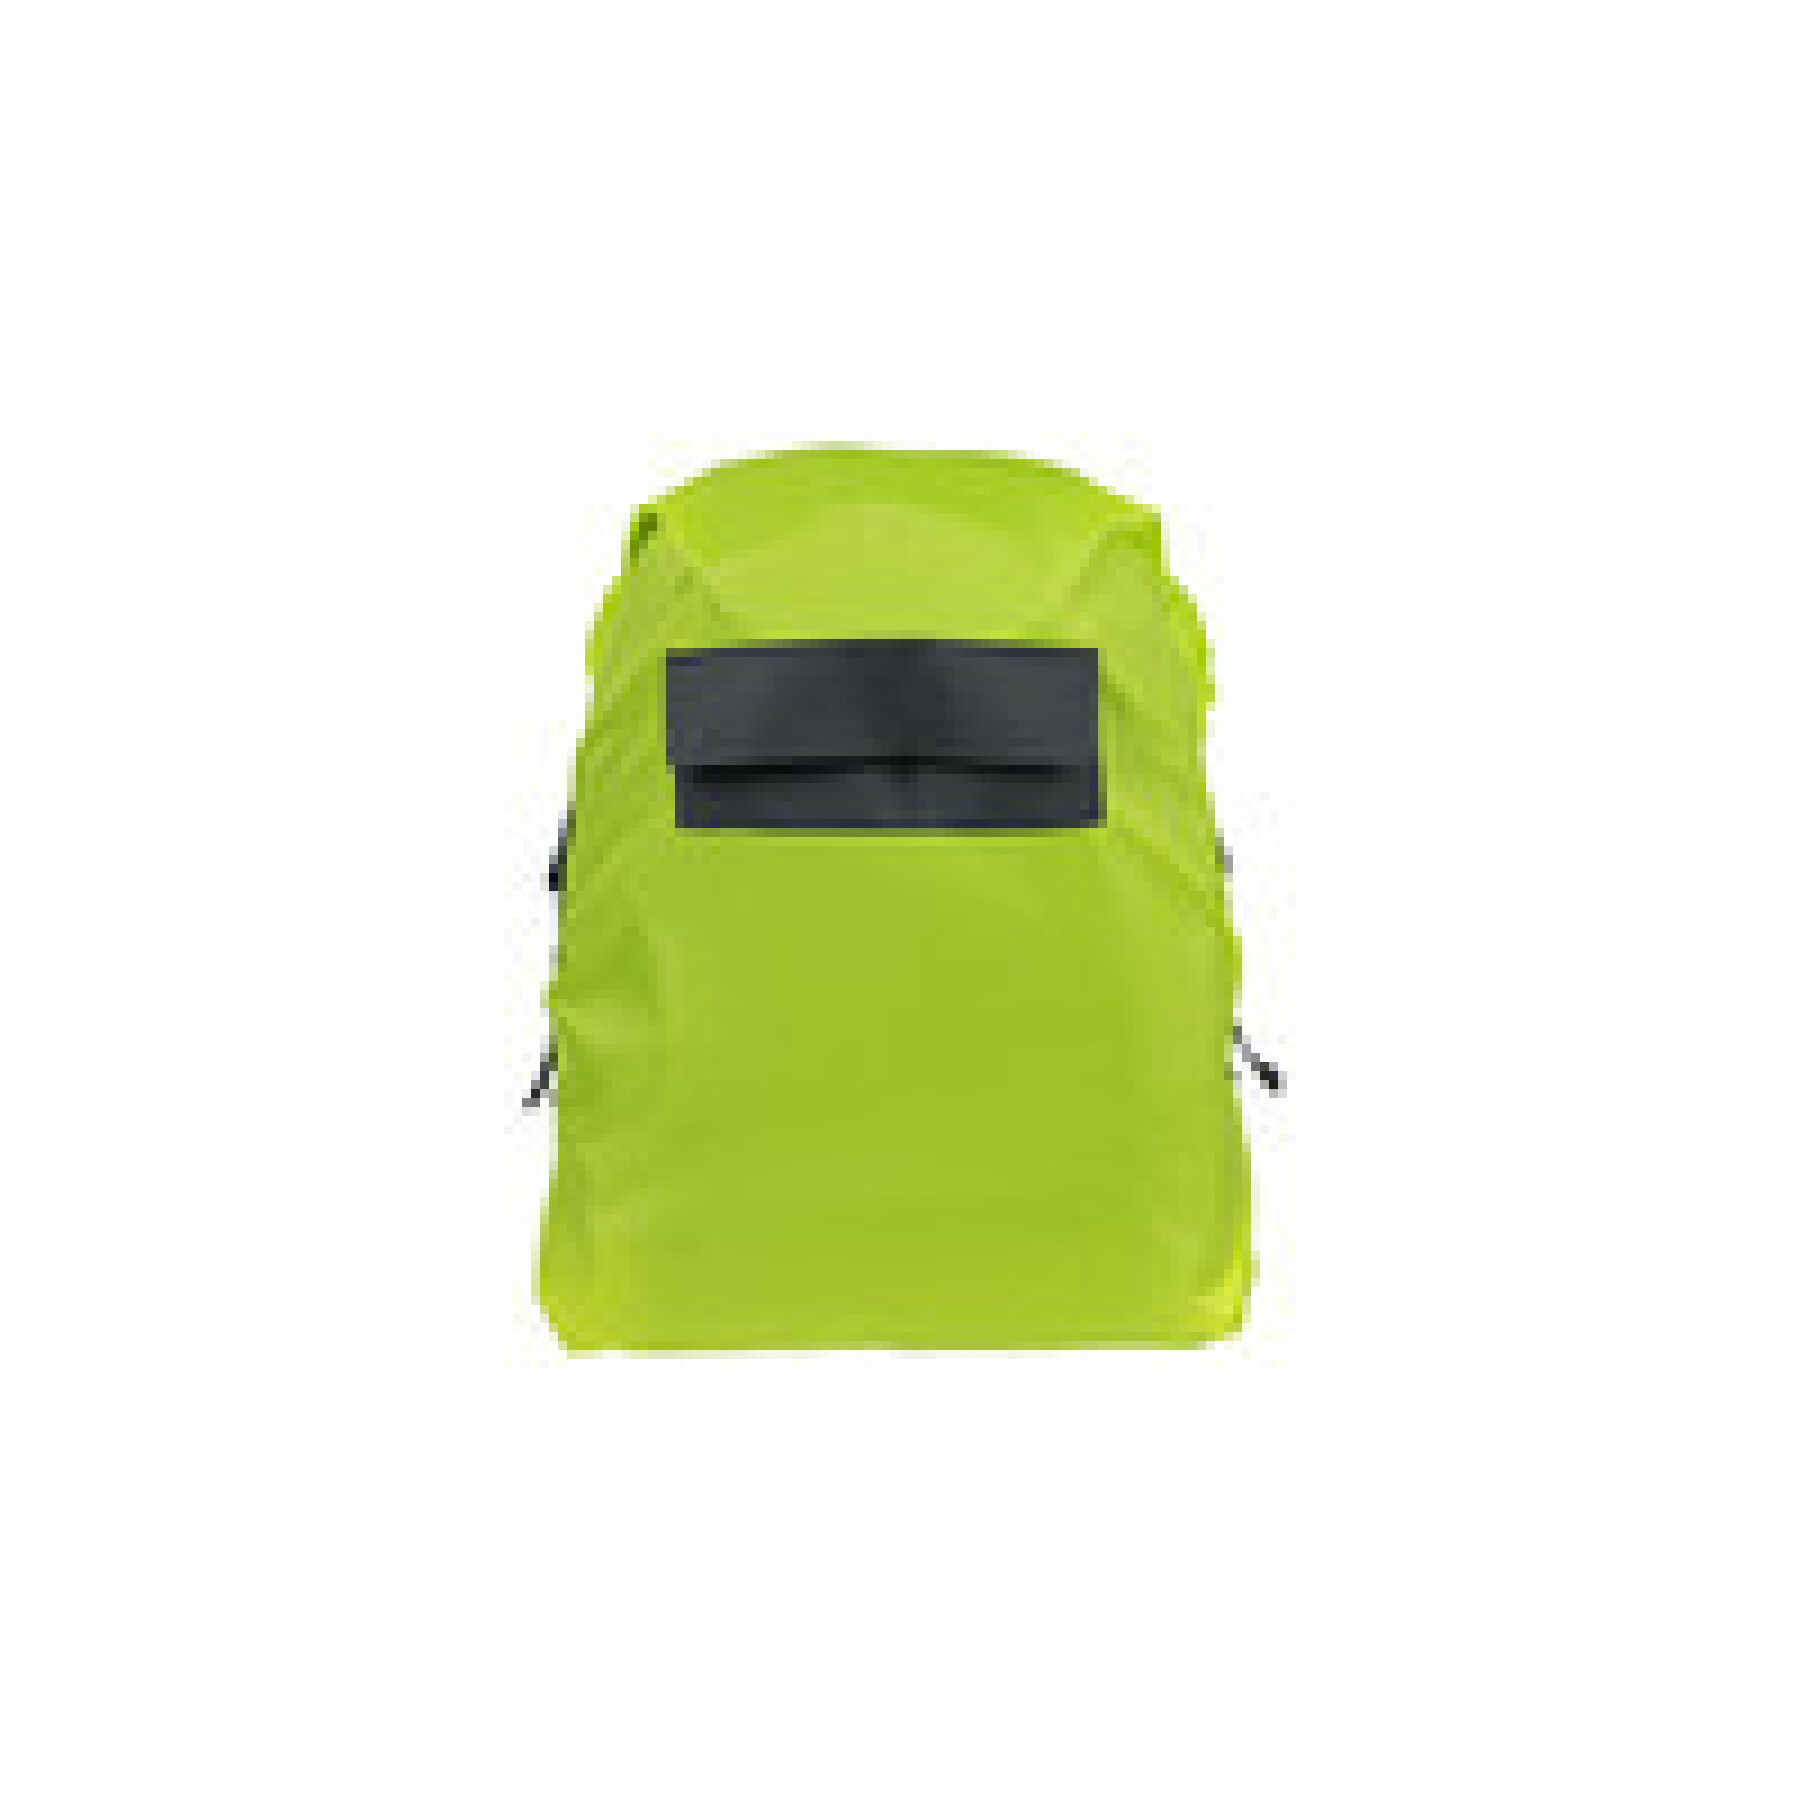 Horizontal waterproof backpack bag Basil keep dry and clean hook-on